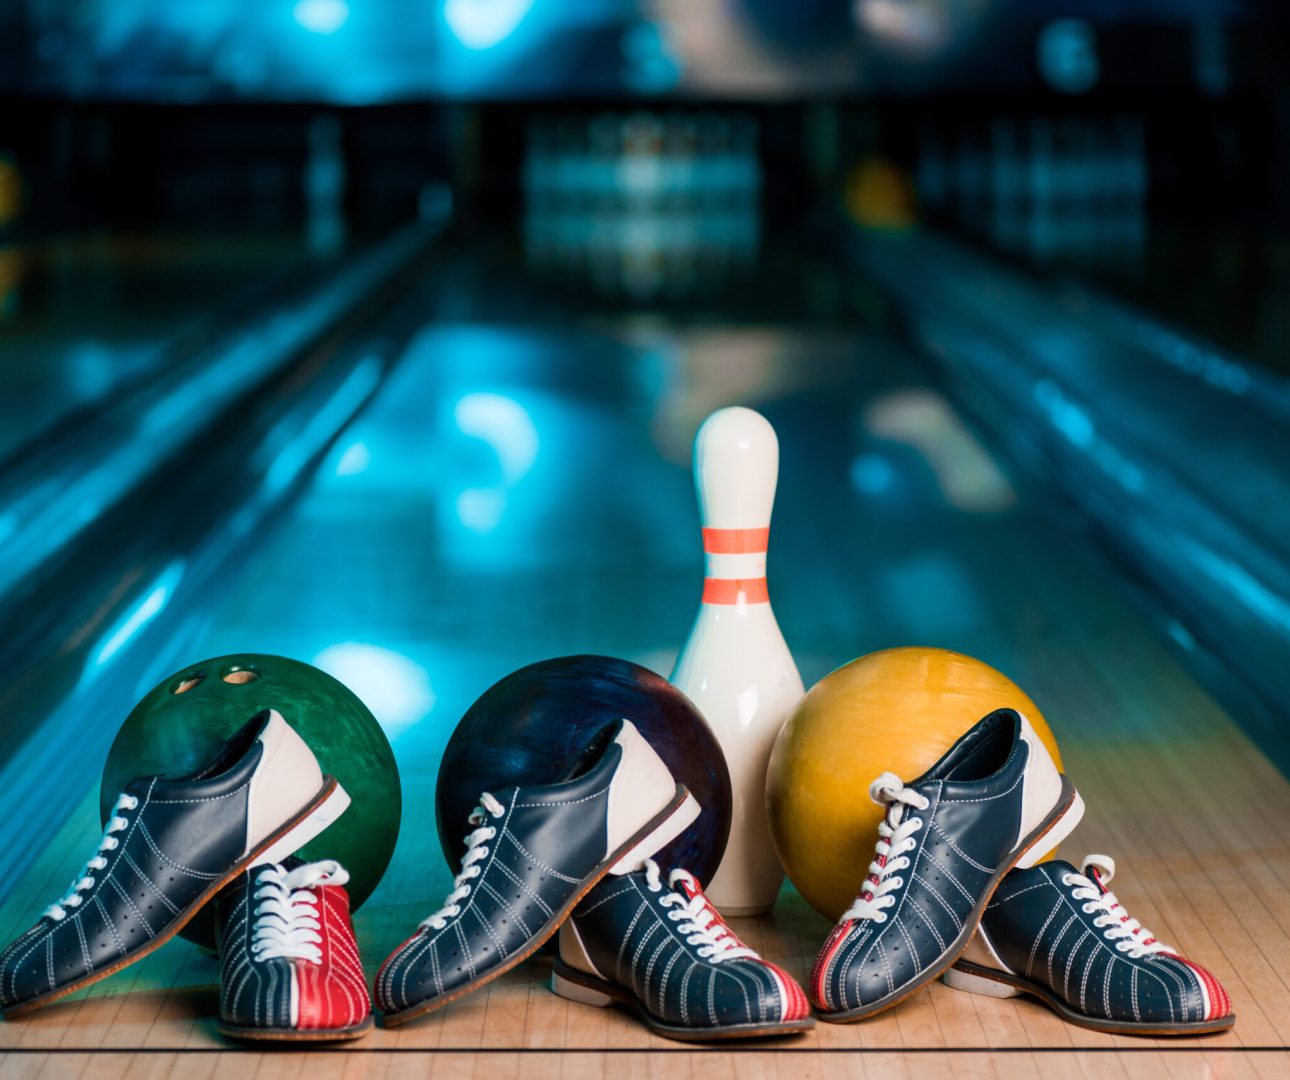 Drie bowlingballen en bowlingschoenen voor een bowlingkegel